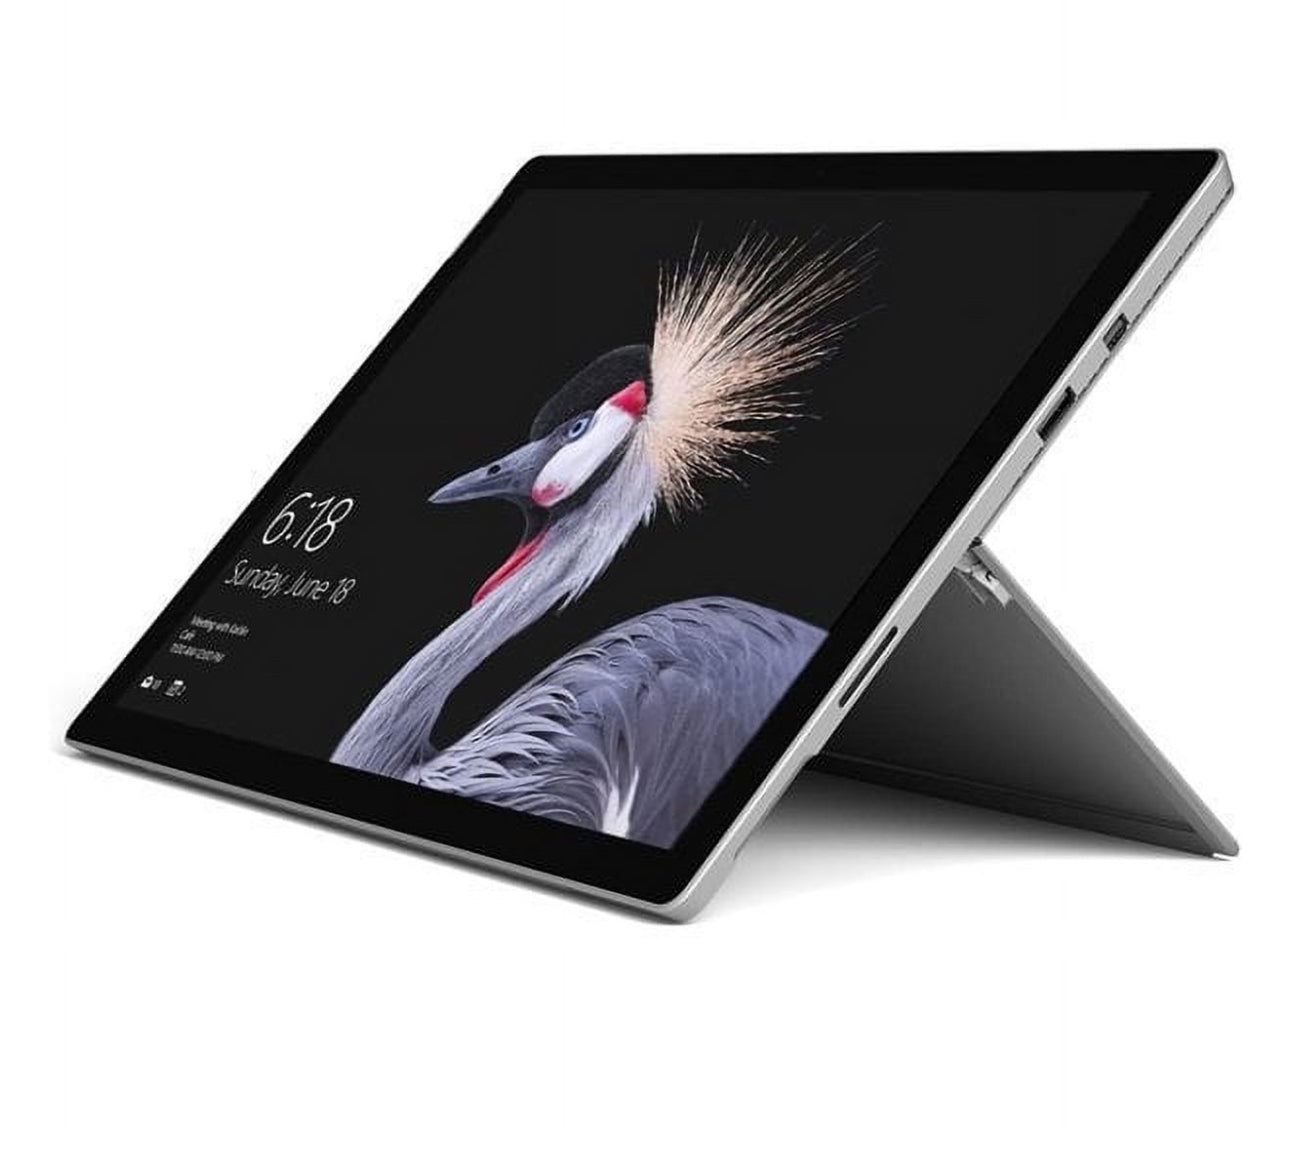 Microsoft Surface Pro 5 - Intel Core i5 7300U, 8GB DDR3, 256GB SSD, Windows 10 Tablet PCs (Used)